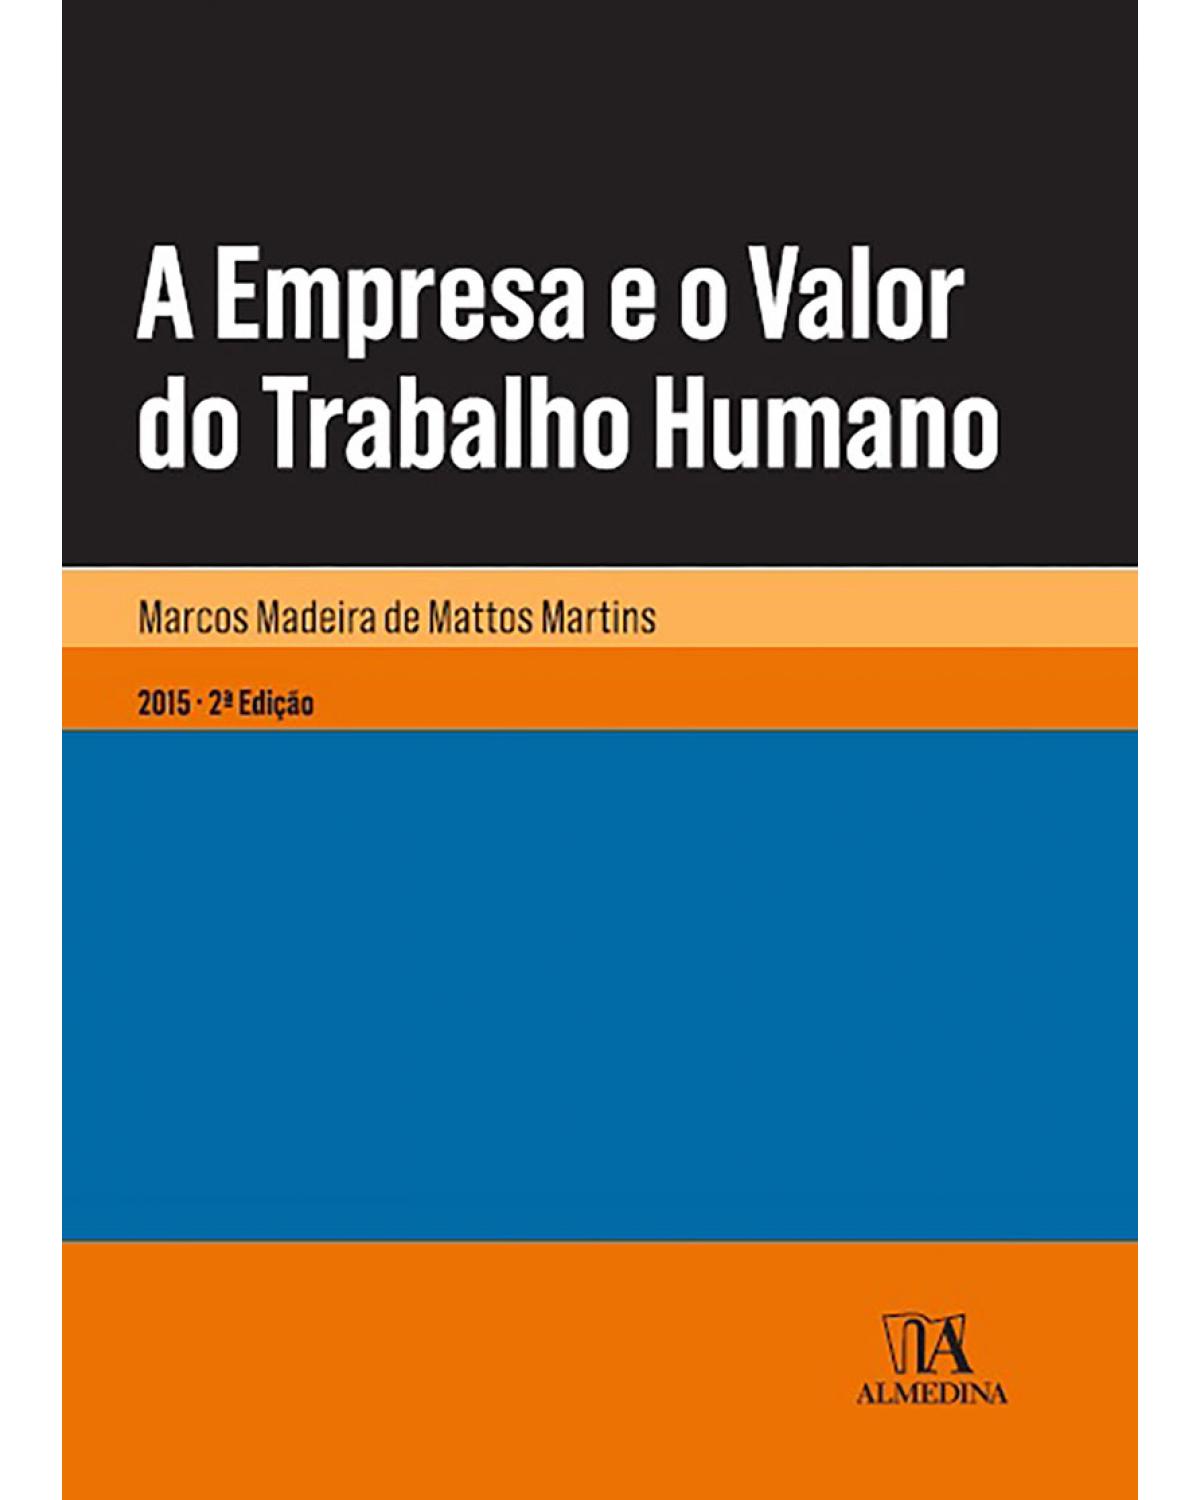 A Empresa e o Valor do Trabalho Humano - 2ª Edição